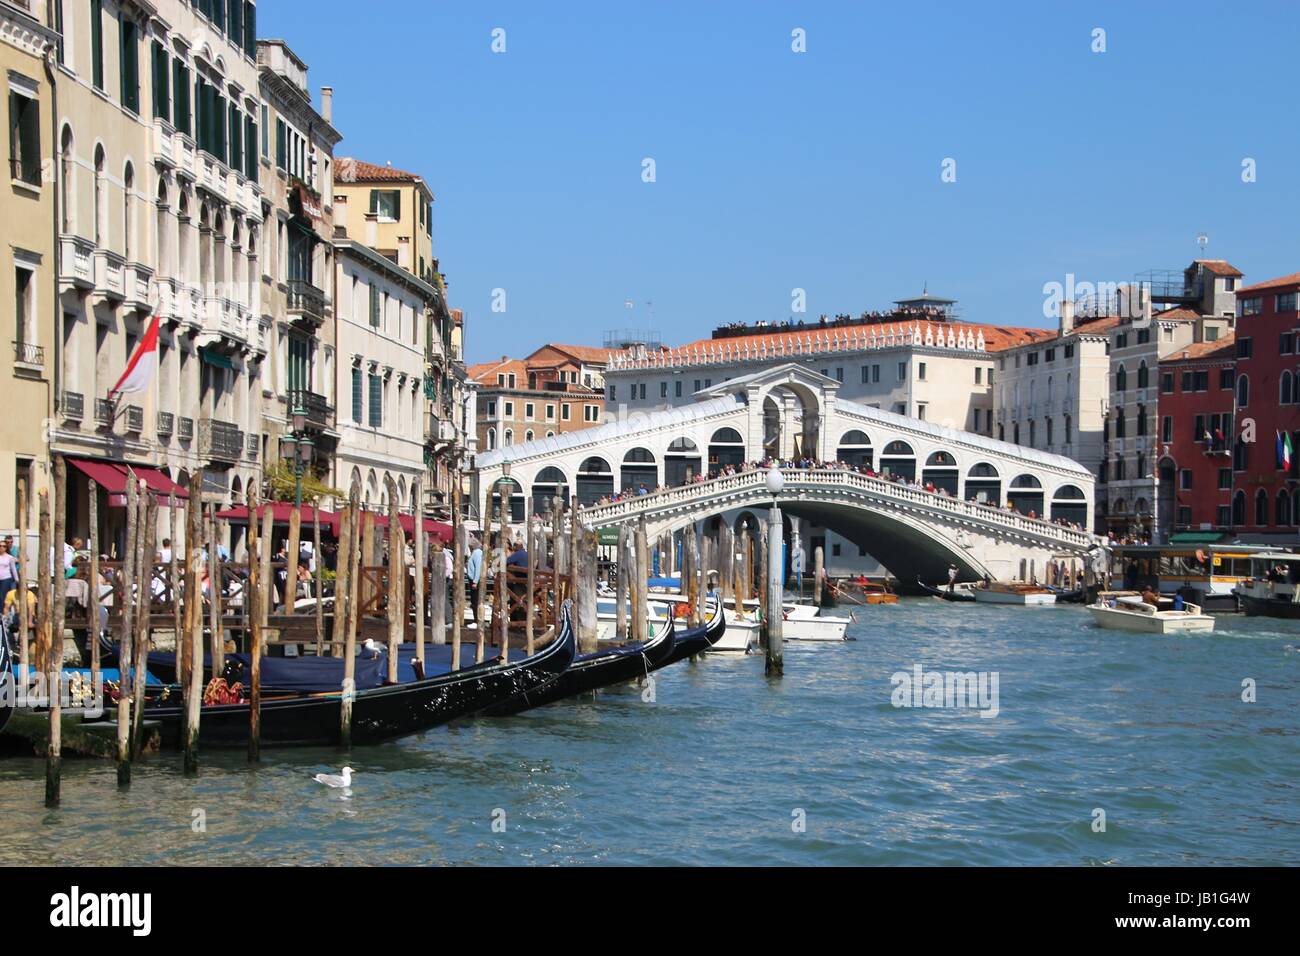 Die Rialto-Brücke in Venedig, Italien, Europa. Errichtet im Jahre 1591, überspannt es den Canal Grande. Gondeln im Vordergrund. Stockfoto